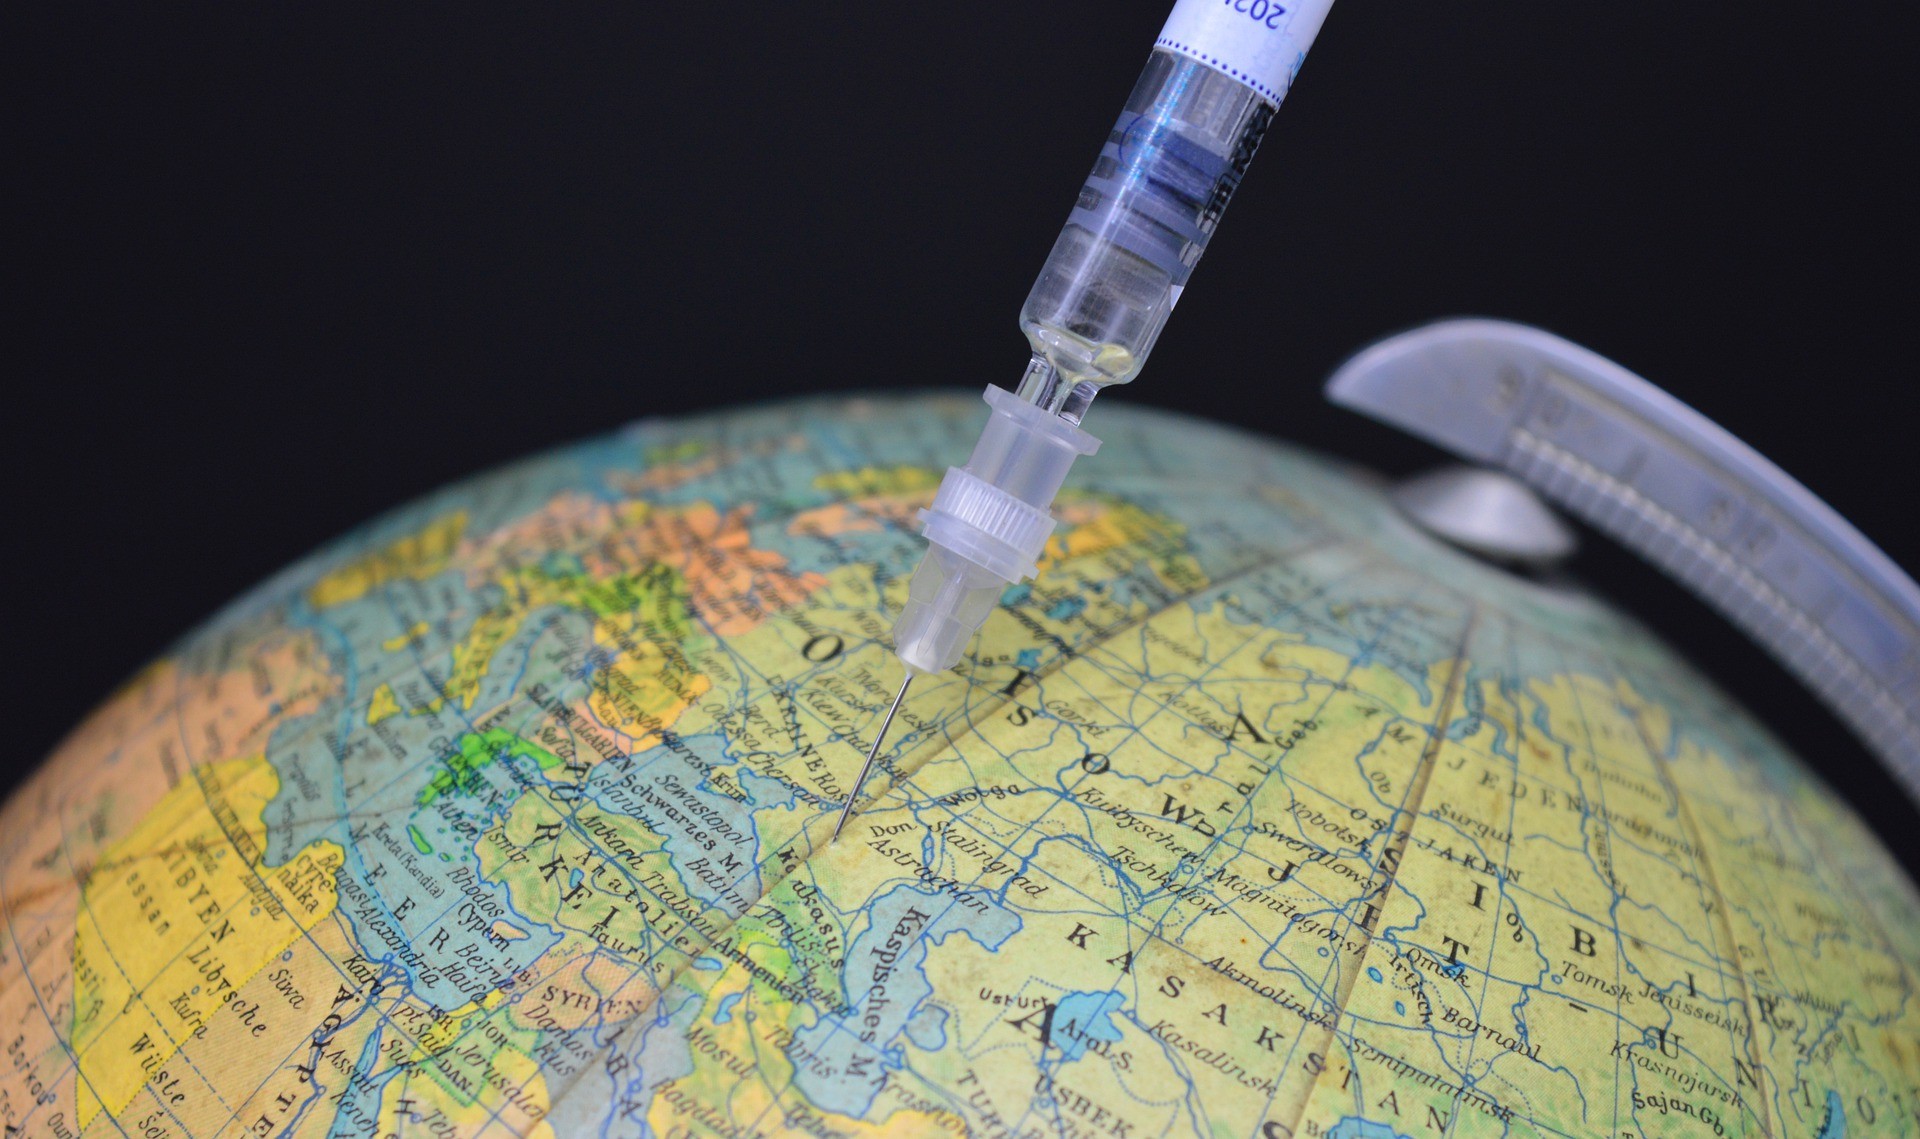 Em estudo com 3,8 milhões de russos que receberam a vacina Sputnik V entre dezembro de 2020 e março de 2021, imunizante apresentou efetividade de 97,6% contra a Covid-19 (Foto: Frauke Riether/Pixabay)